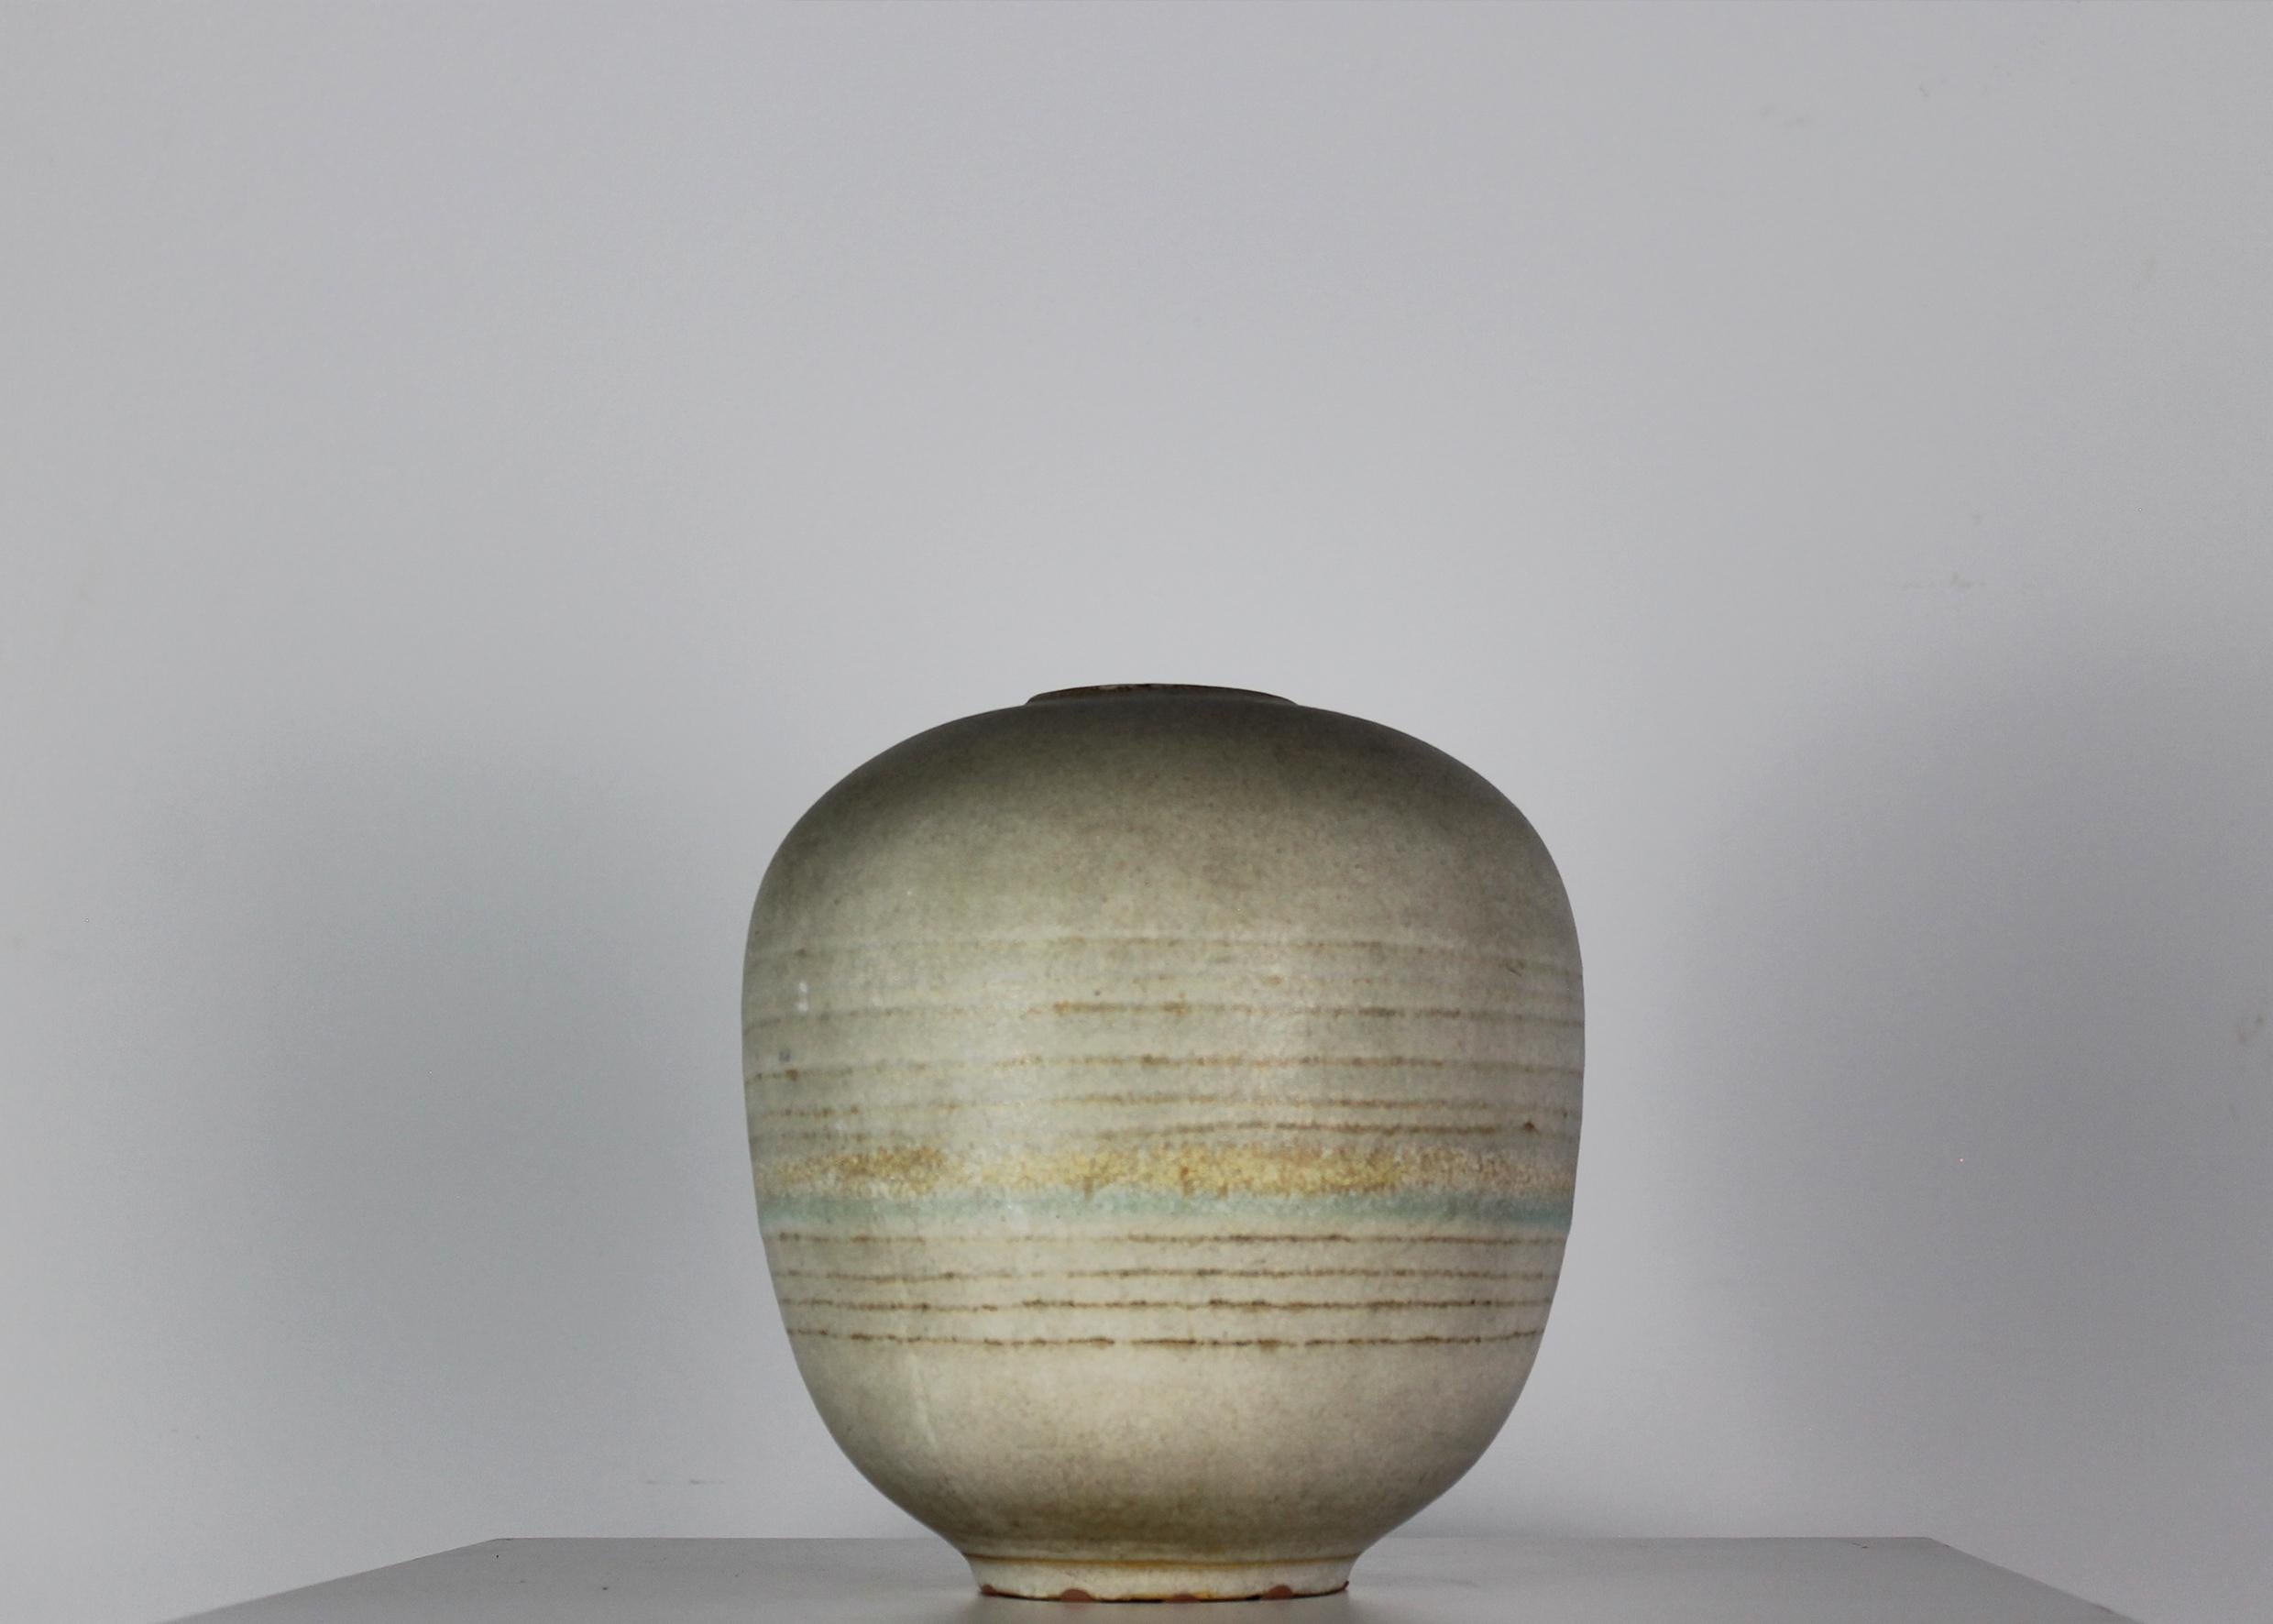 Italian Decorative Vase in Stoneware with Signature by Carlo Zauli 1960s Italy For Sale